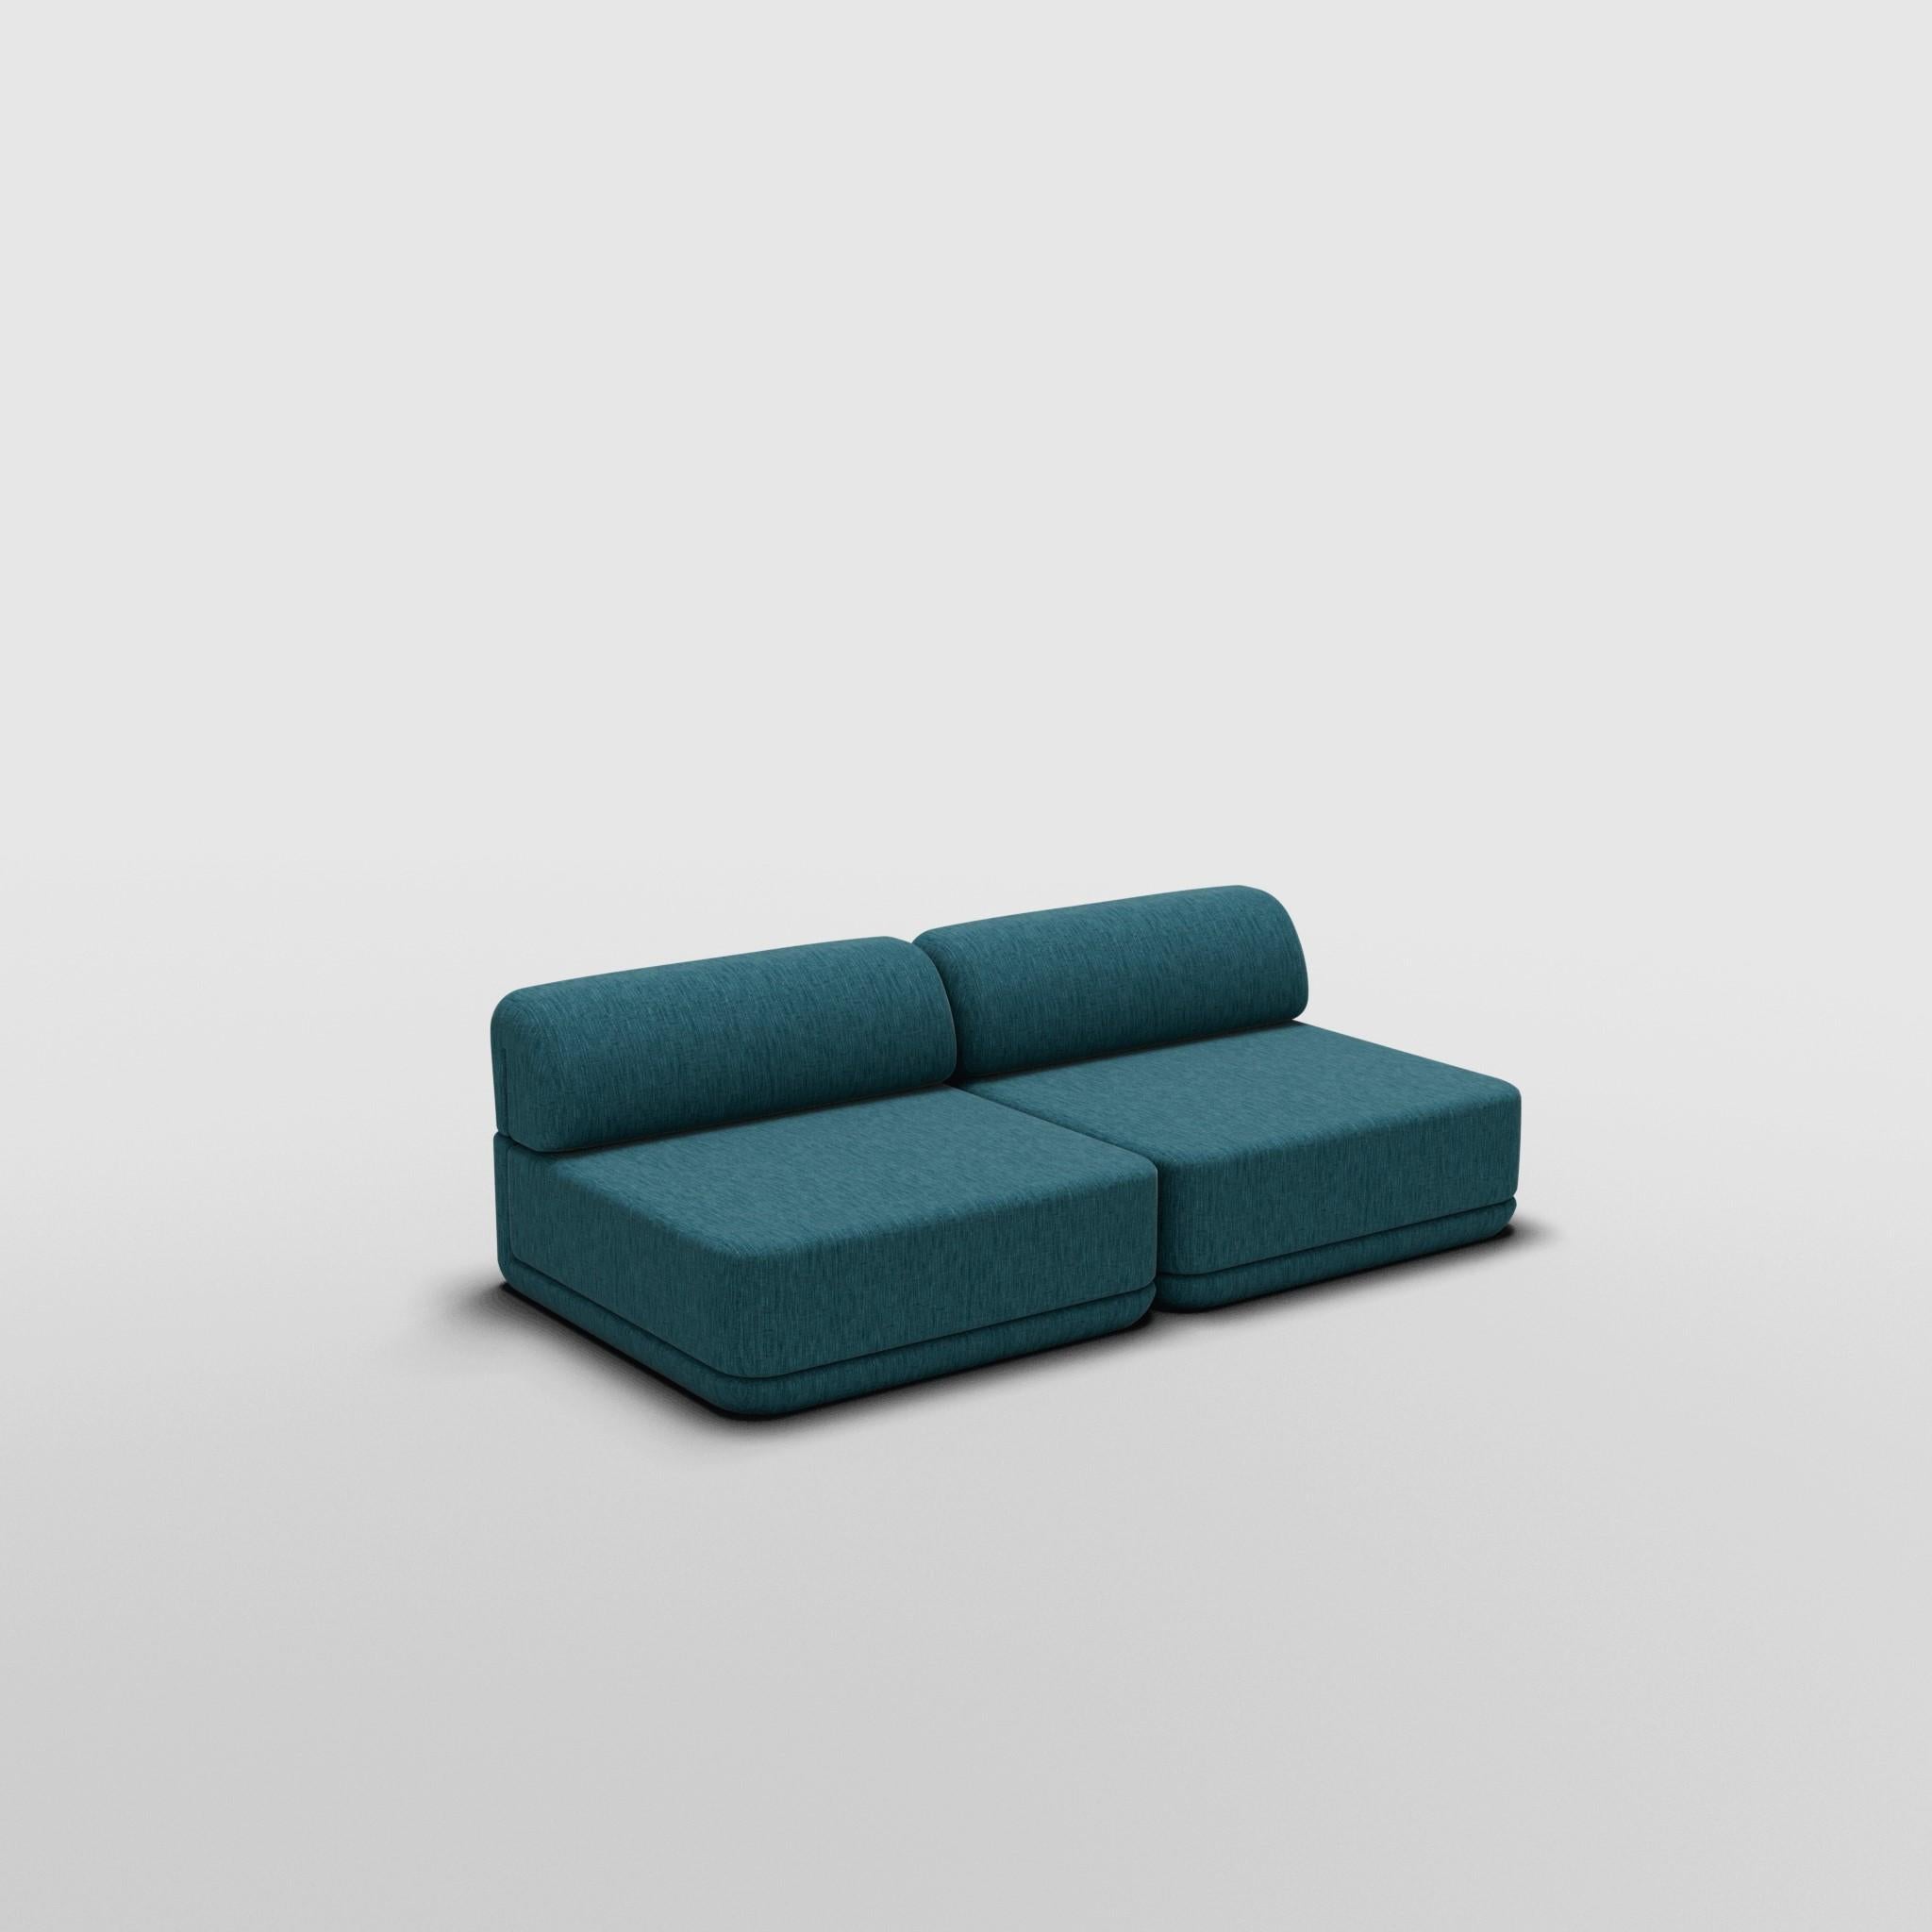 Lounge Set - Inspiré par les meubles de luxe italiens des années 70

Découvrez le canapé Cube, où l'art rencontre l'adaptabilité. Son design sculptural et son confort personnalisable créent des possibilités infinies pour votre espace de vie. Faites